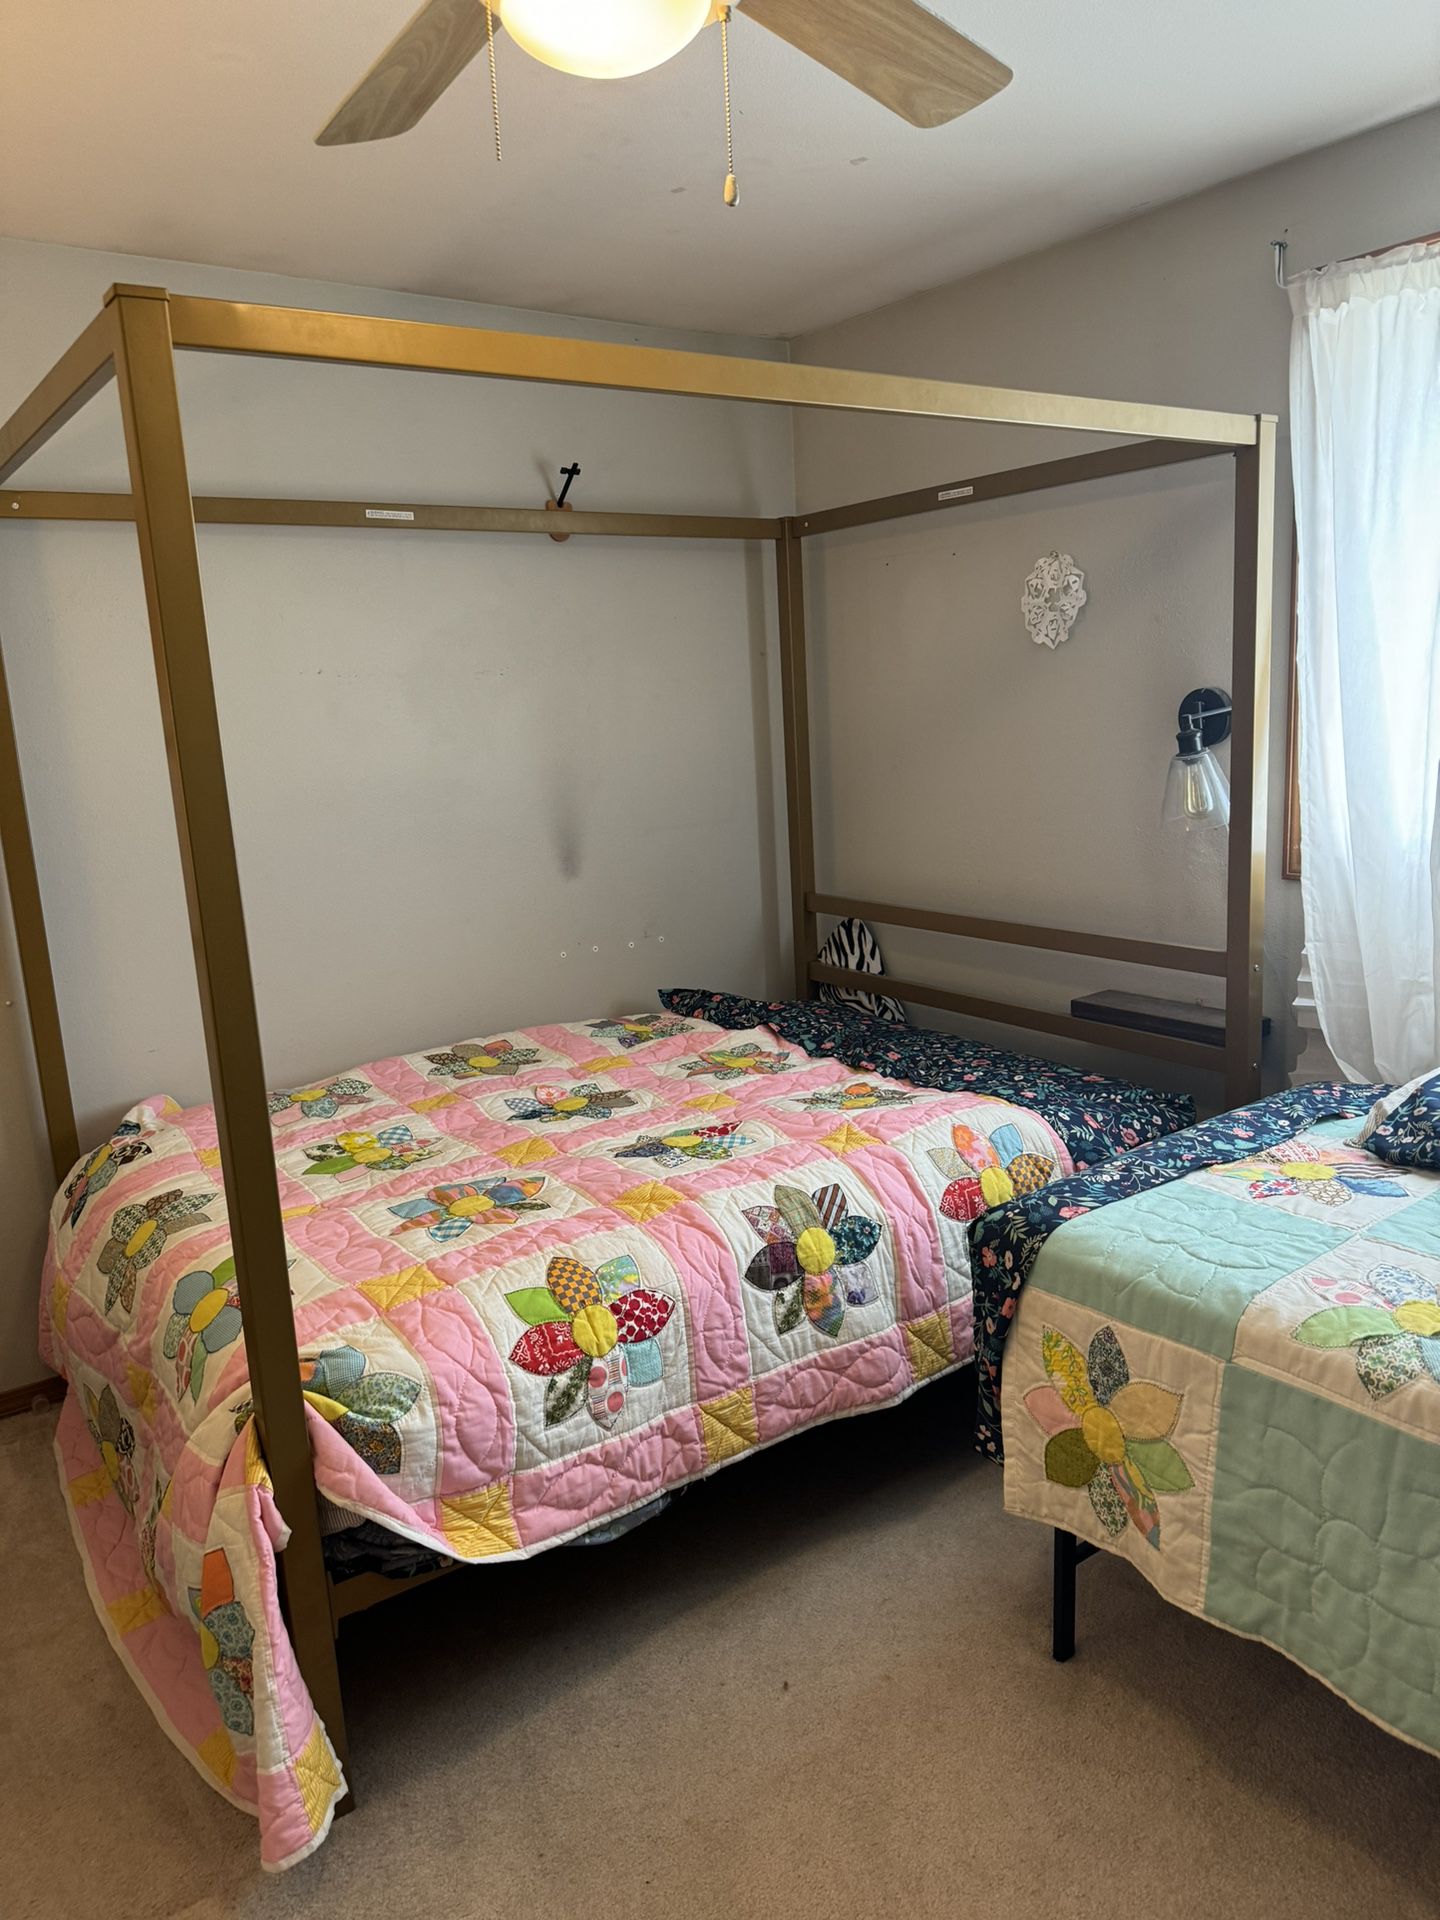 Full Bedroom Set - 3 Piece